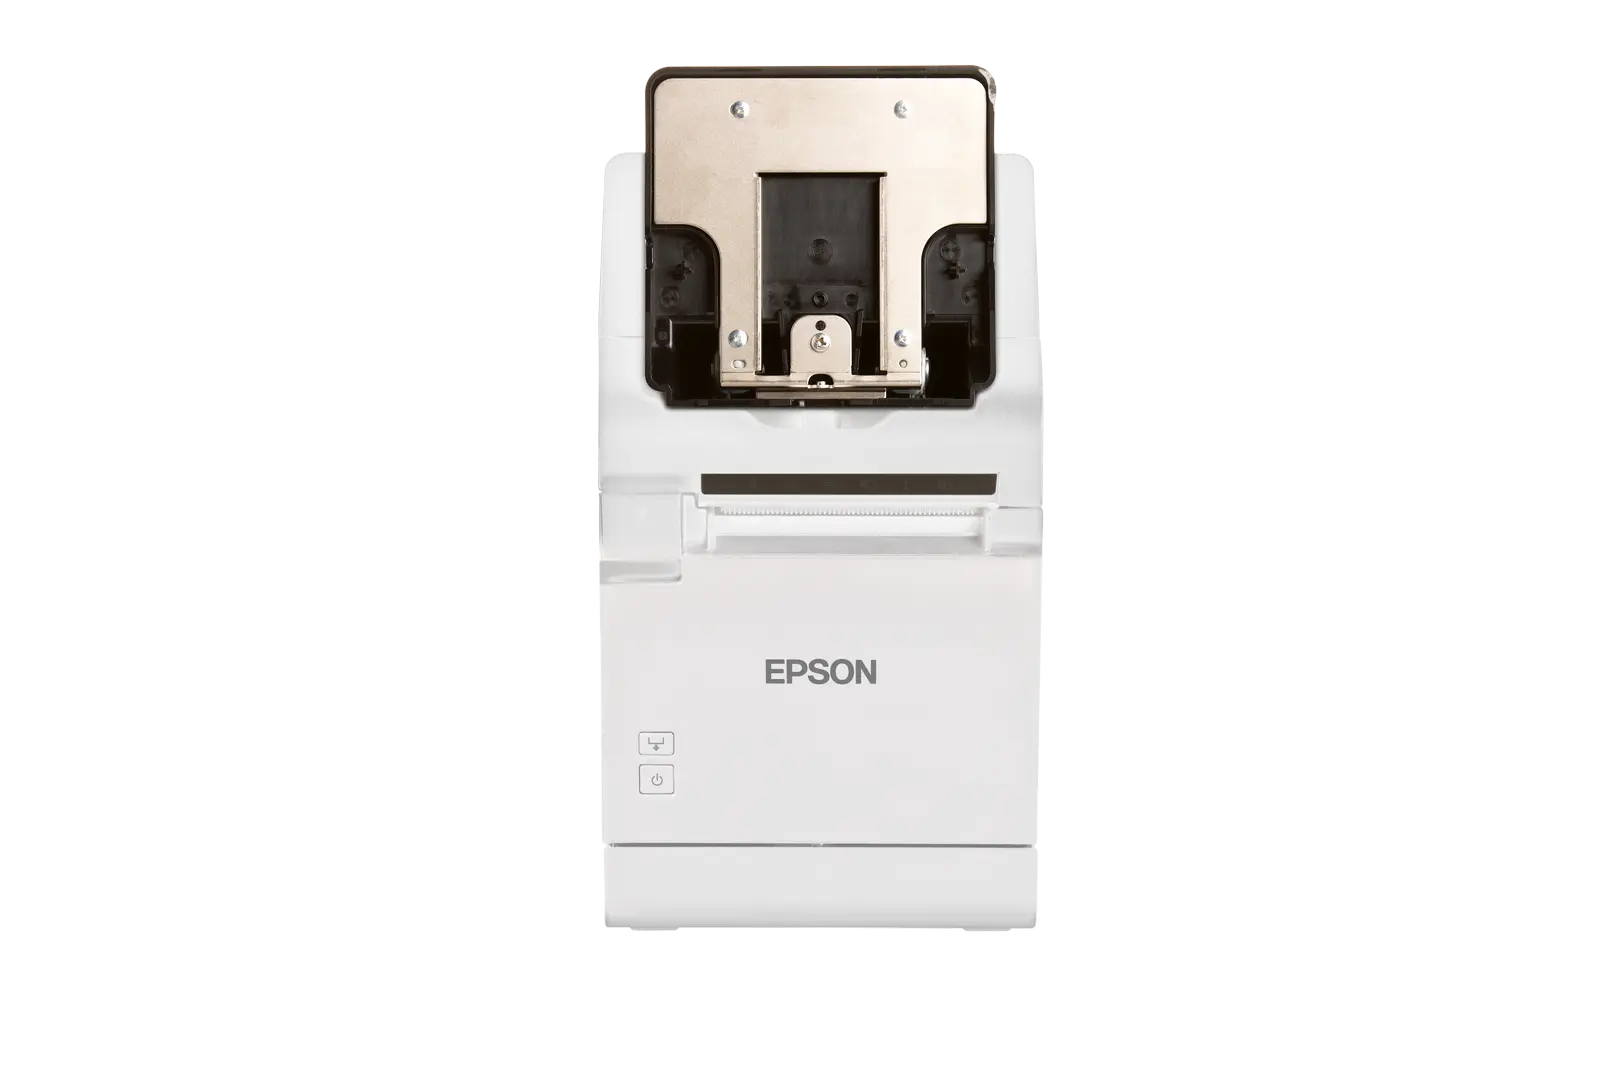 Epson Bondrucker TM-m30II in Weiß mit Bluetooth, Ethernet, USB, Tablethalterung von vorne, Tablethalterung